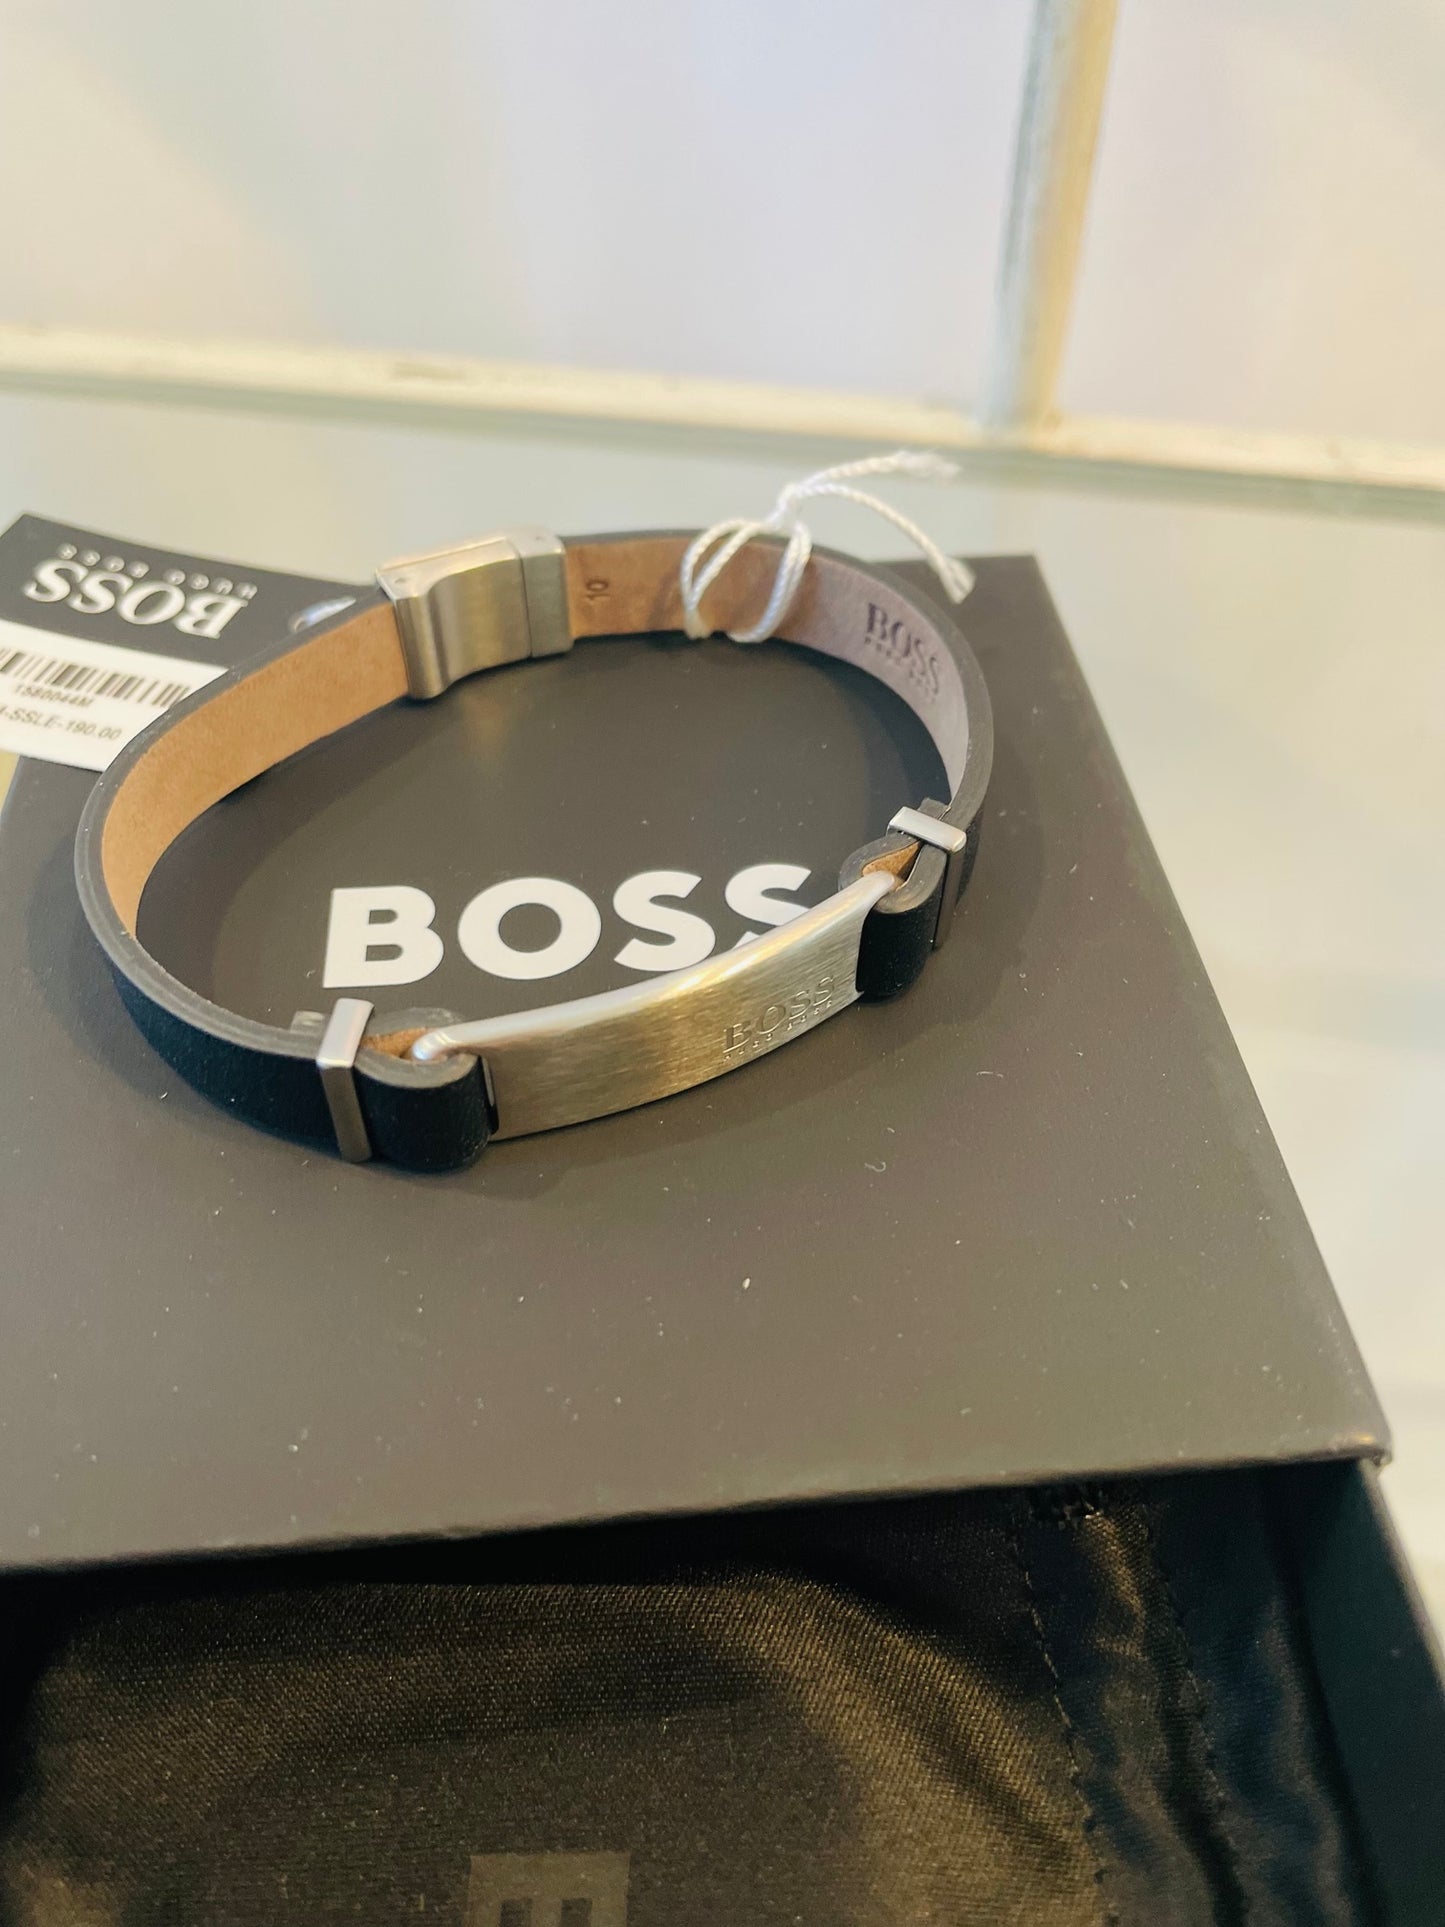 Boss bracelet